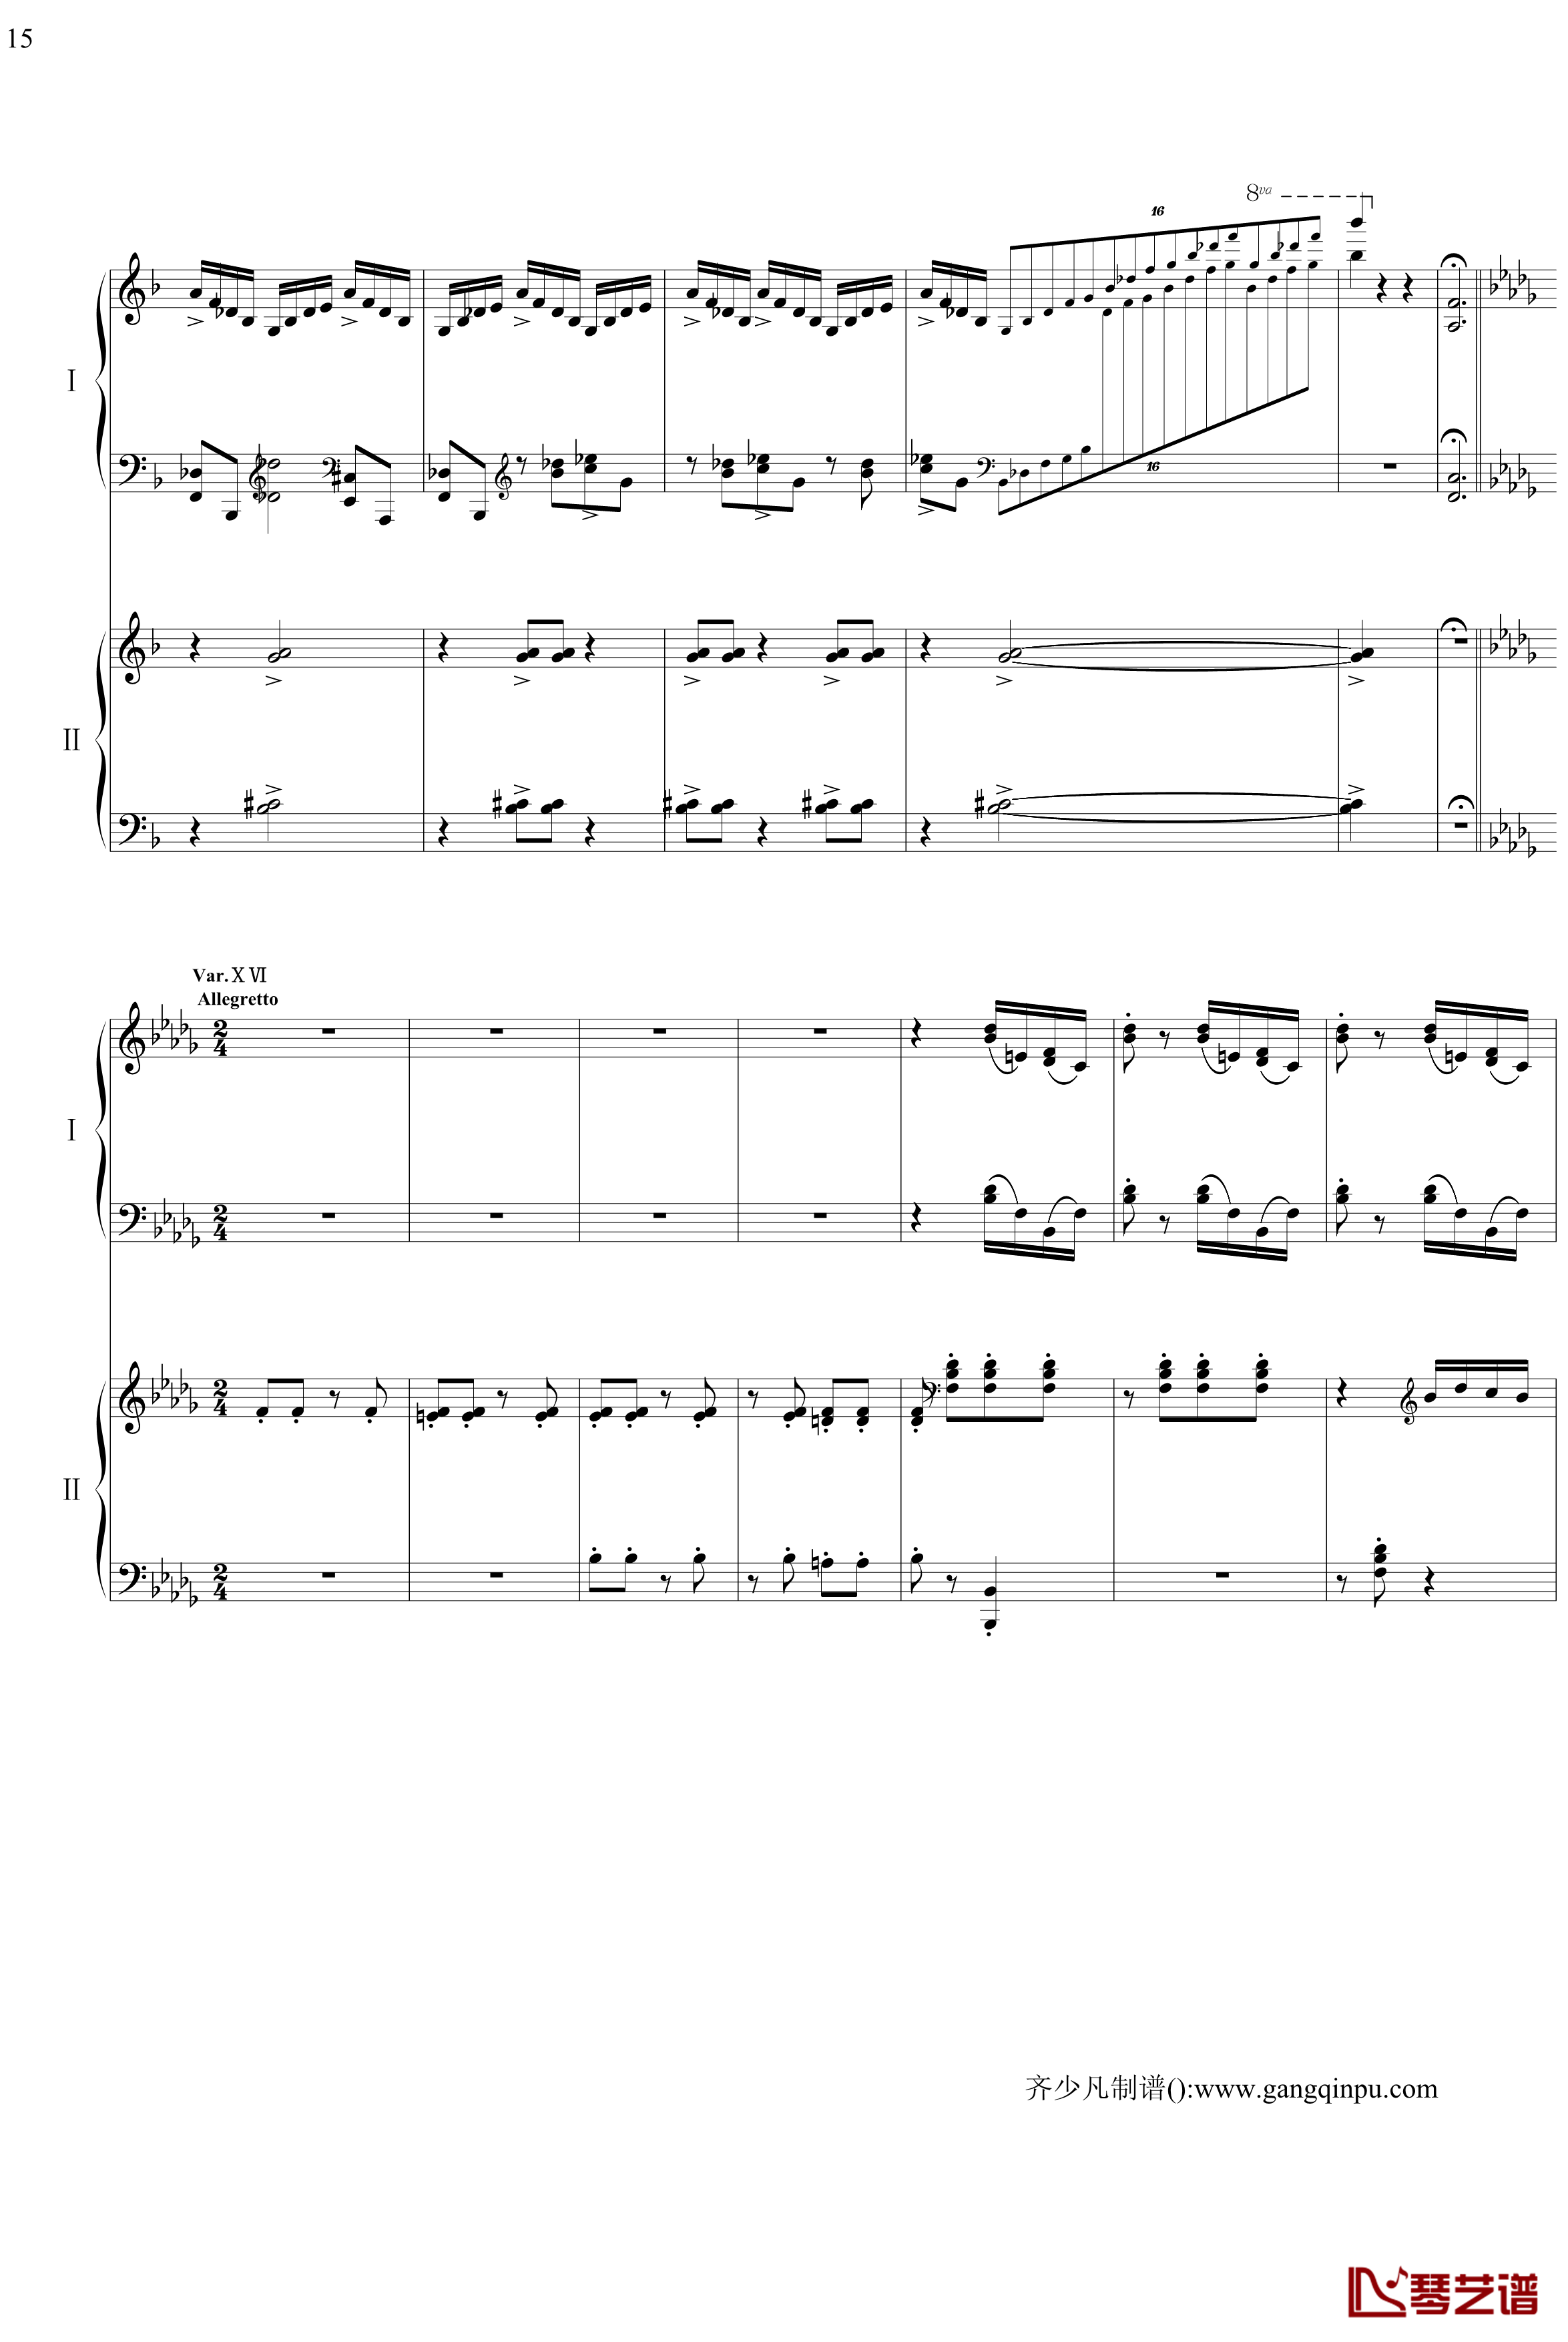 帕格尼尼主题狂想曲钢琴谱-11~18变奏-拉赫马尼若夫15